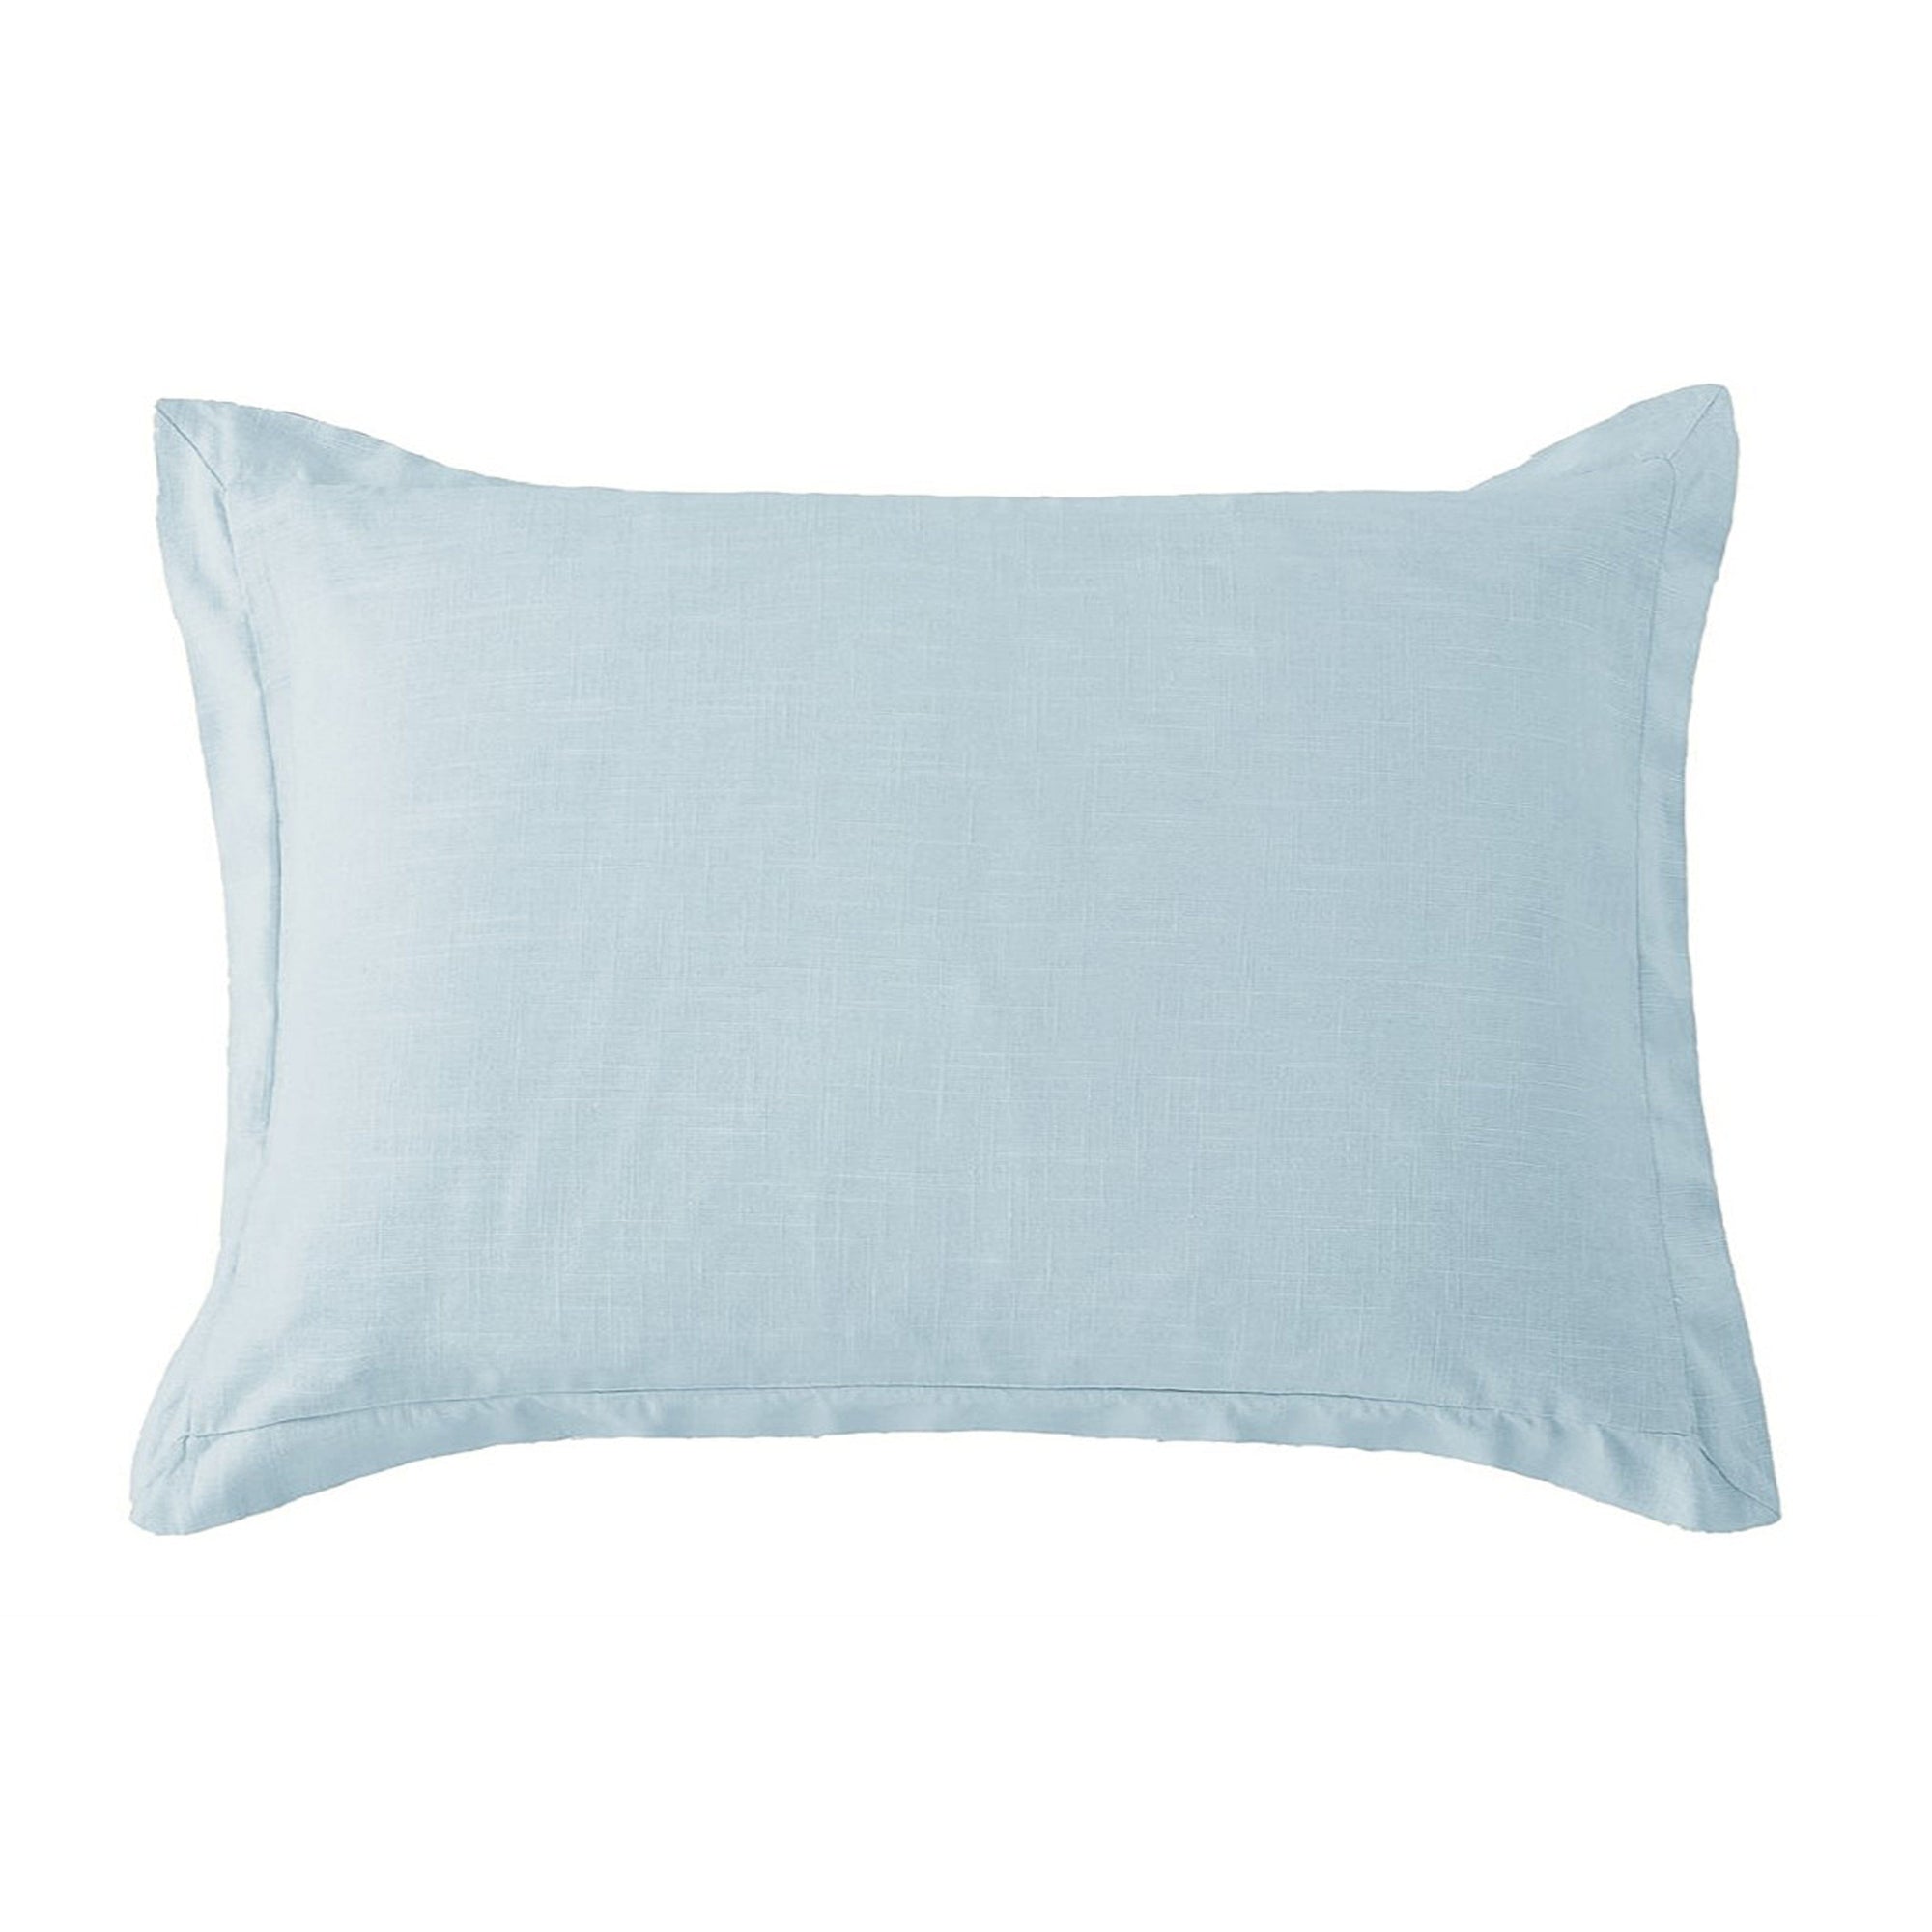 Washed Linen Tailored Pillow Sham Standard / Light Blue Sham